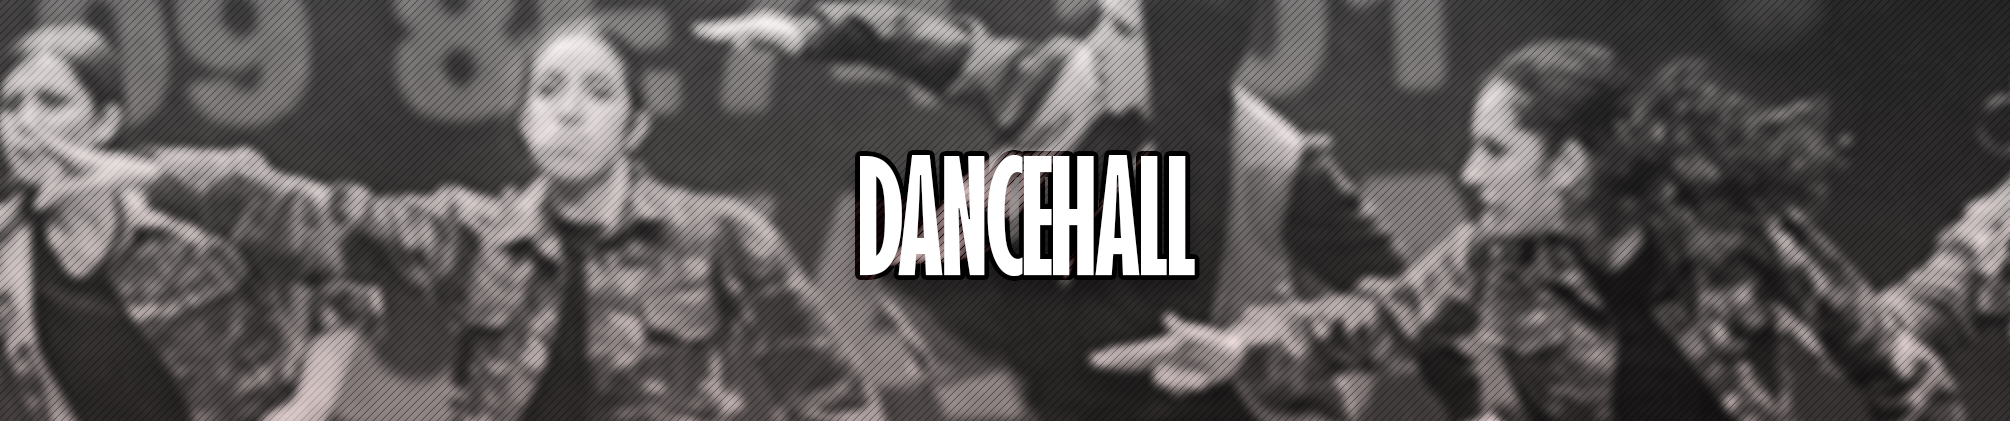 Clases y cursos de dancehall en Zaragoza - Bailarán